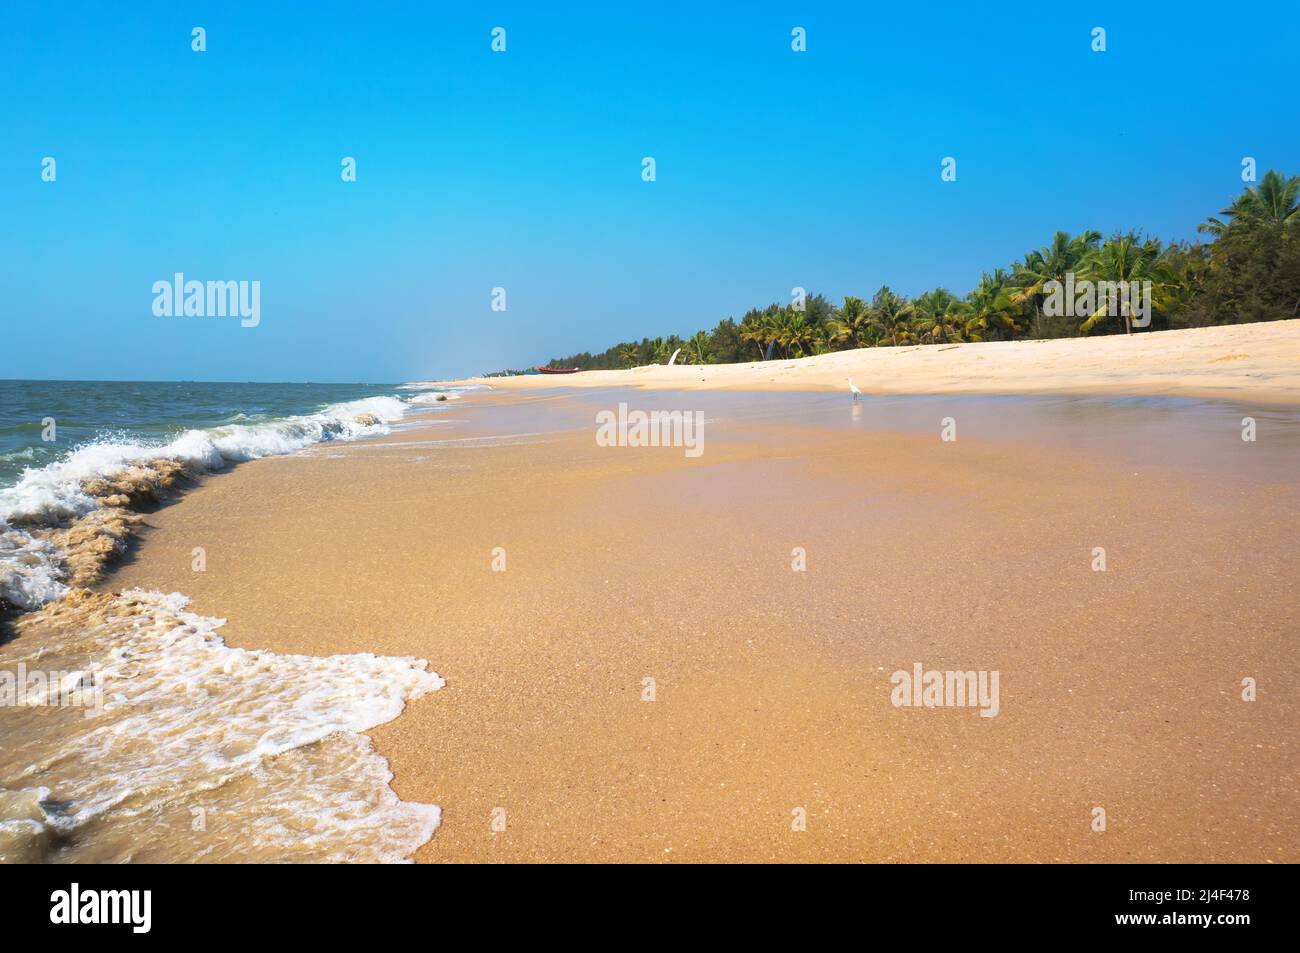 Beautiful tropical beach in Varkala, Kerala, India Stock Photo